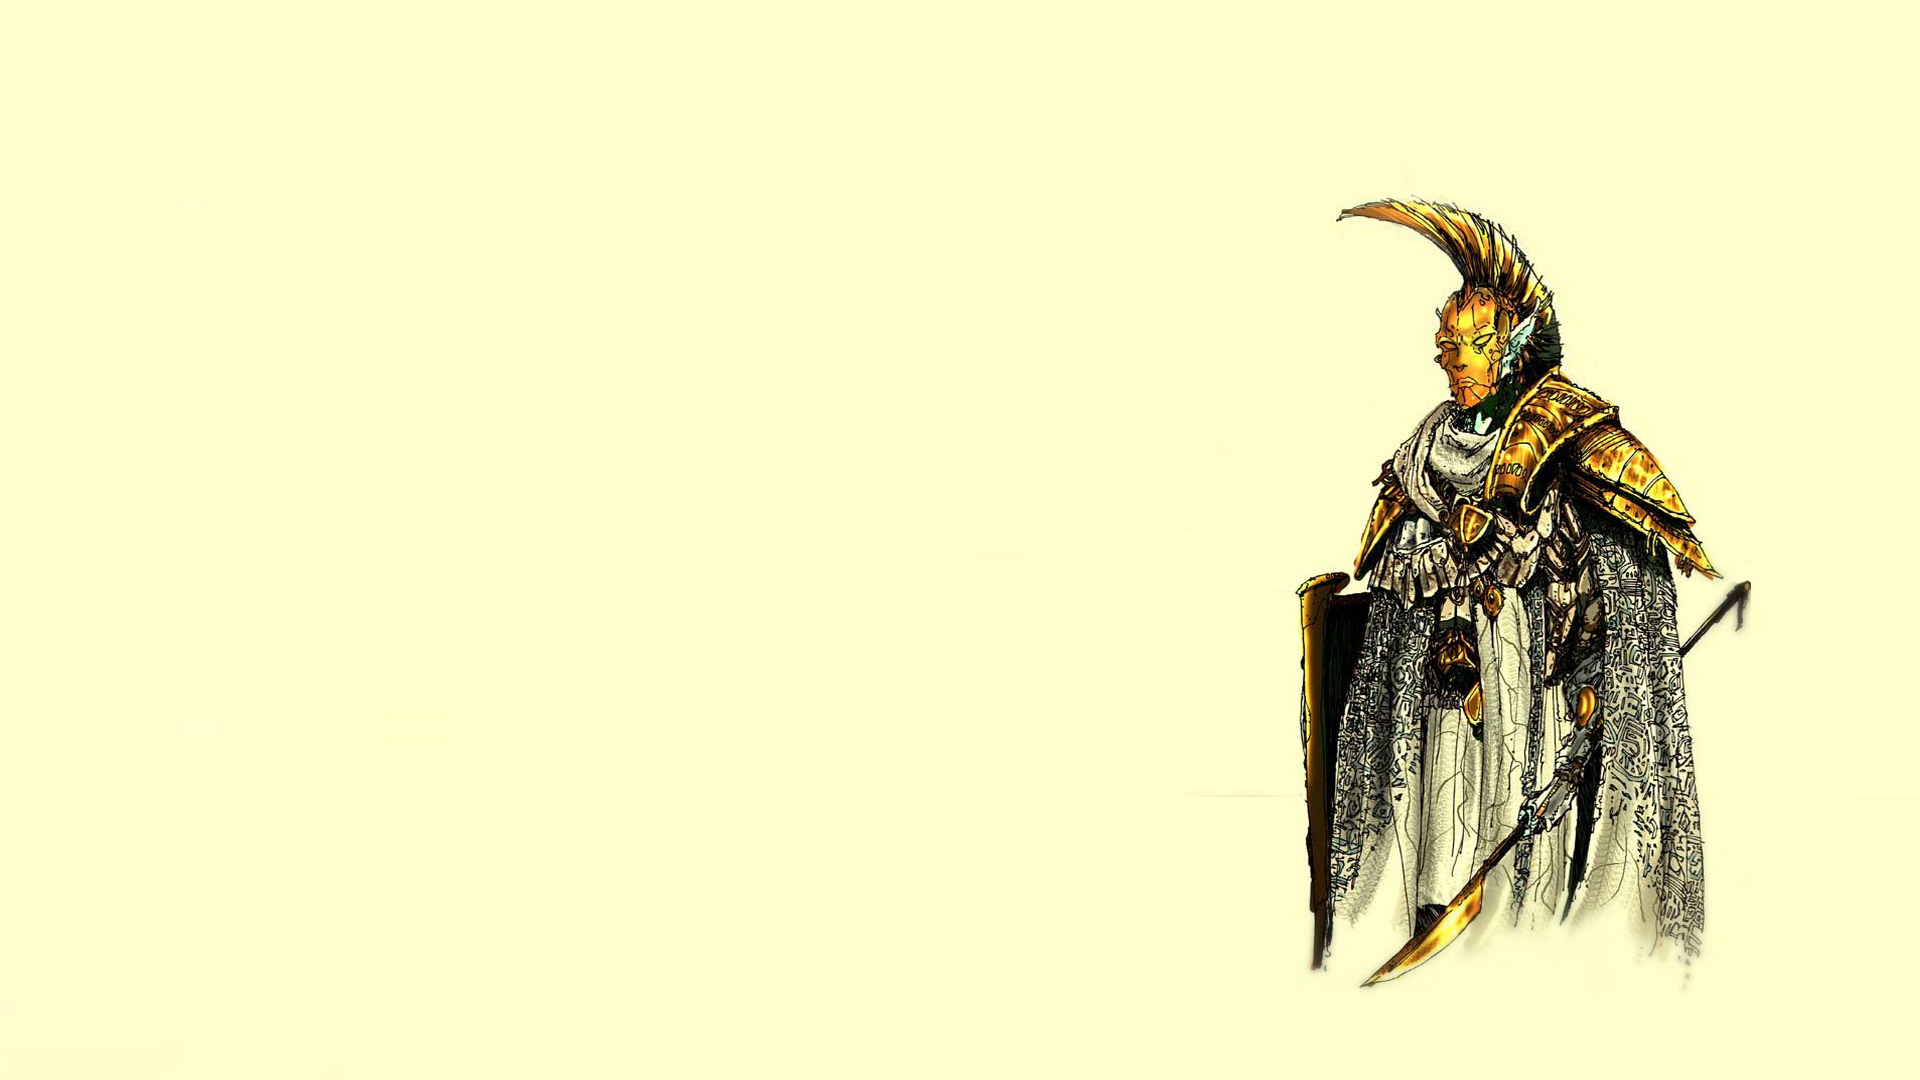 Baixar papel de parede para celular de The Elder Scrolls Iii: Morrowind, Os Pergaminhos Anciões, Videogame gratuito.